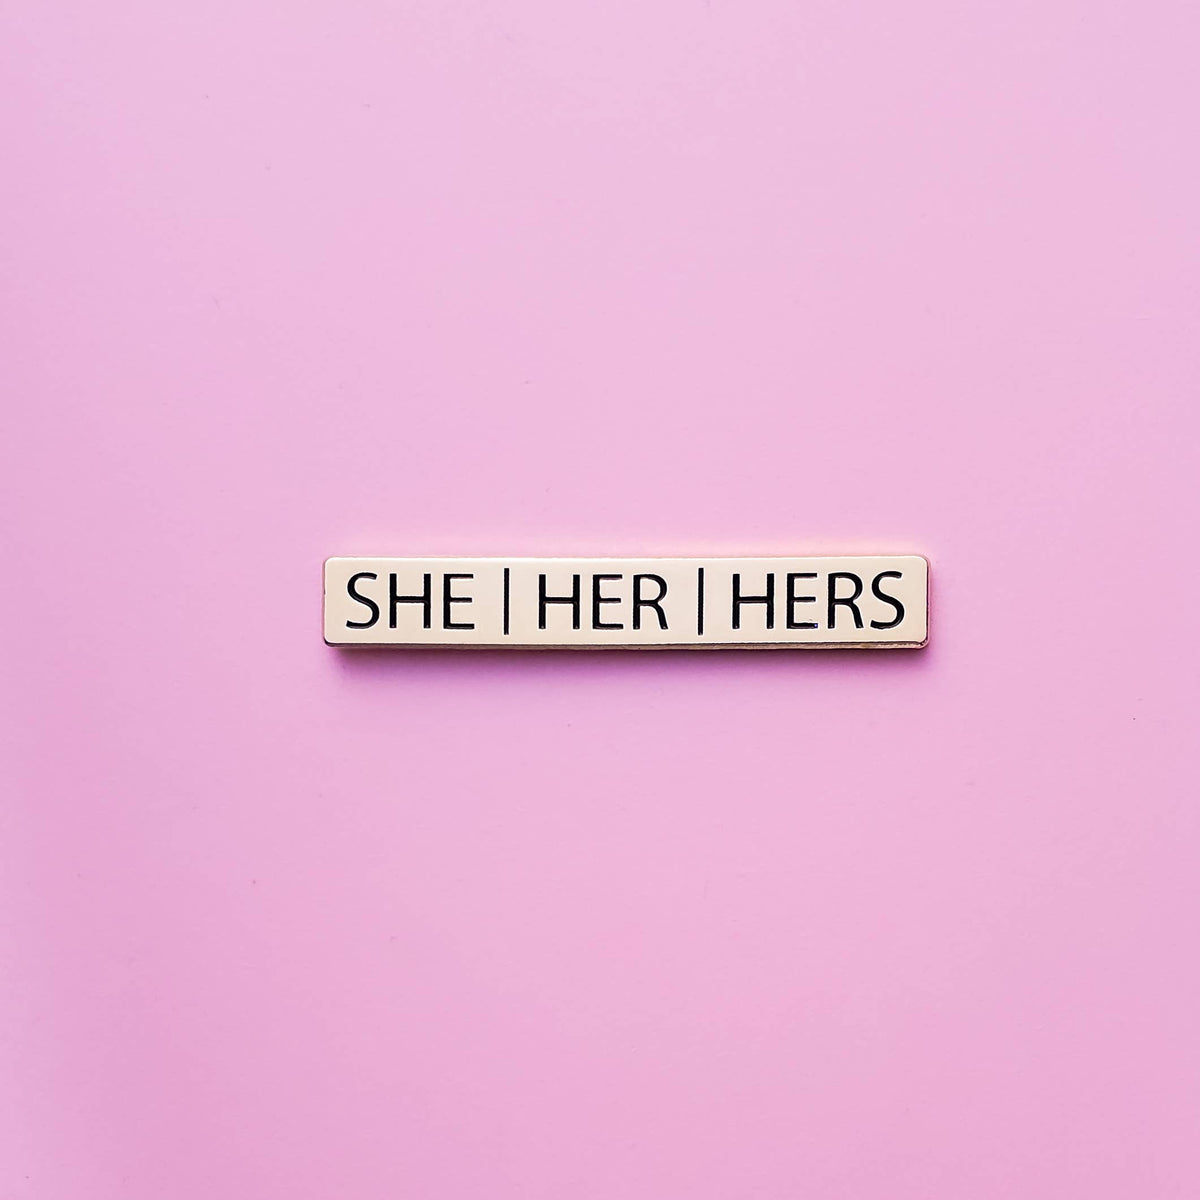 She/Her/Hers Pronoun Pin